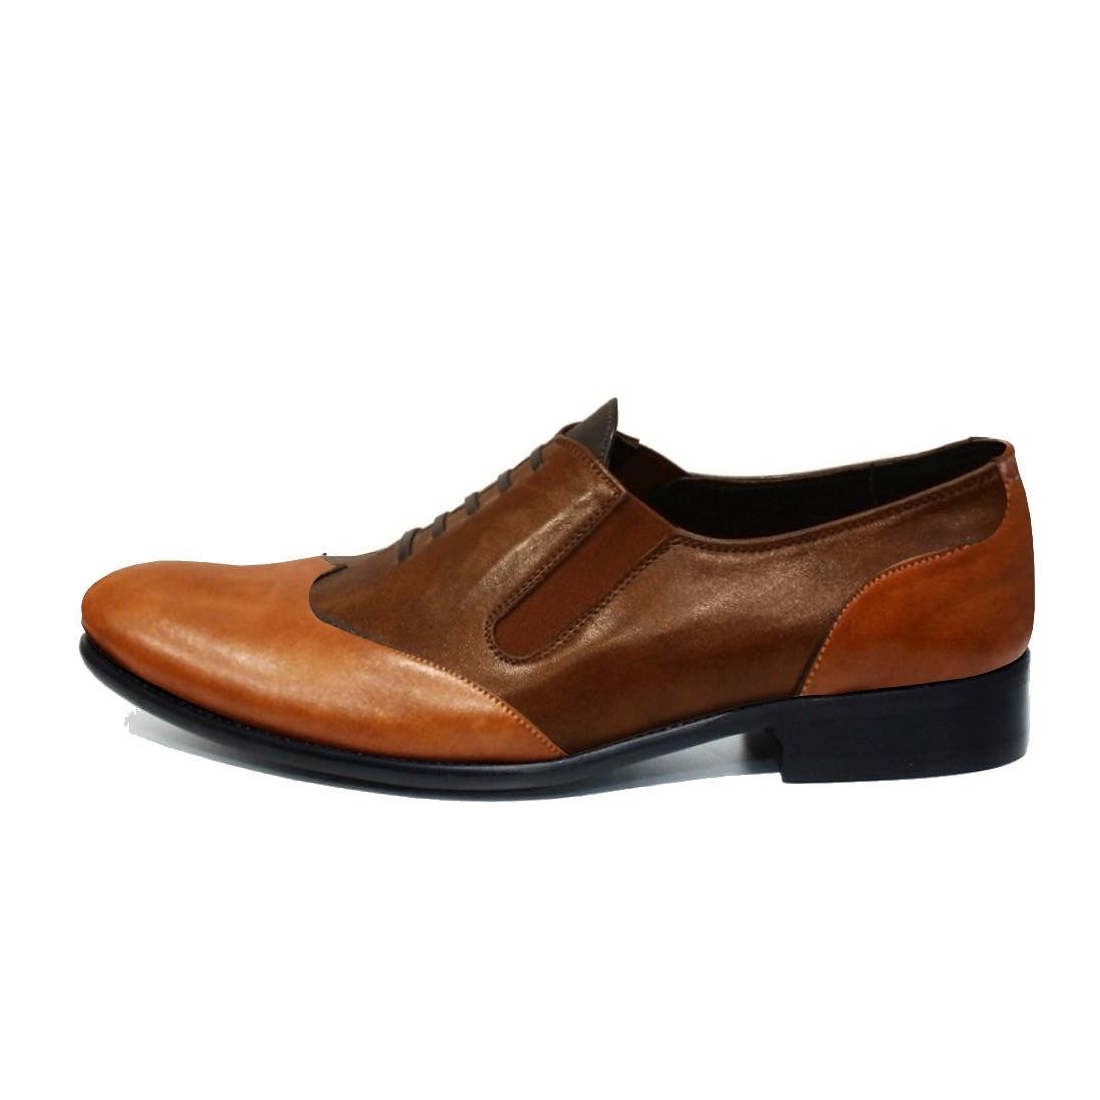 Modello Konello - Zapatillas Sin Cordones - Handmade Colorful Italian Leather Shoes